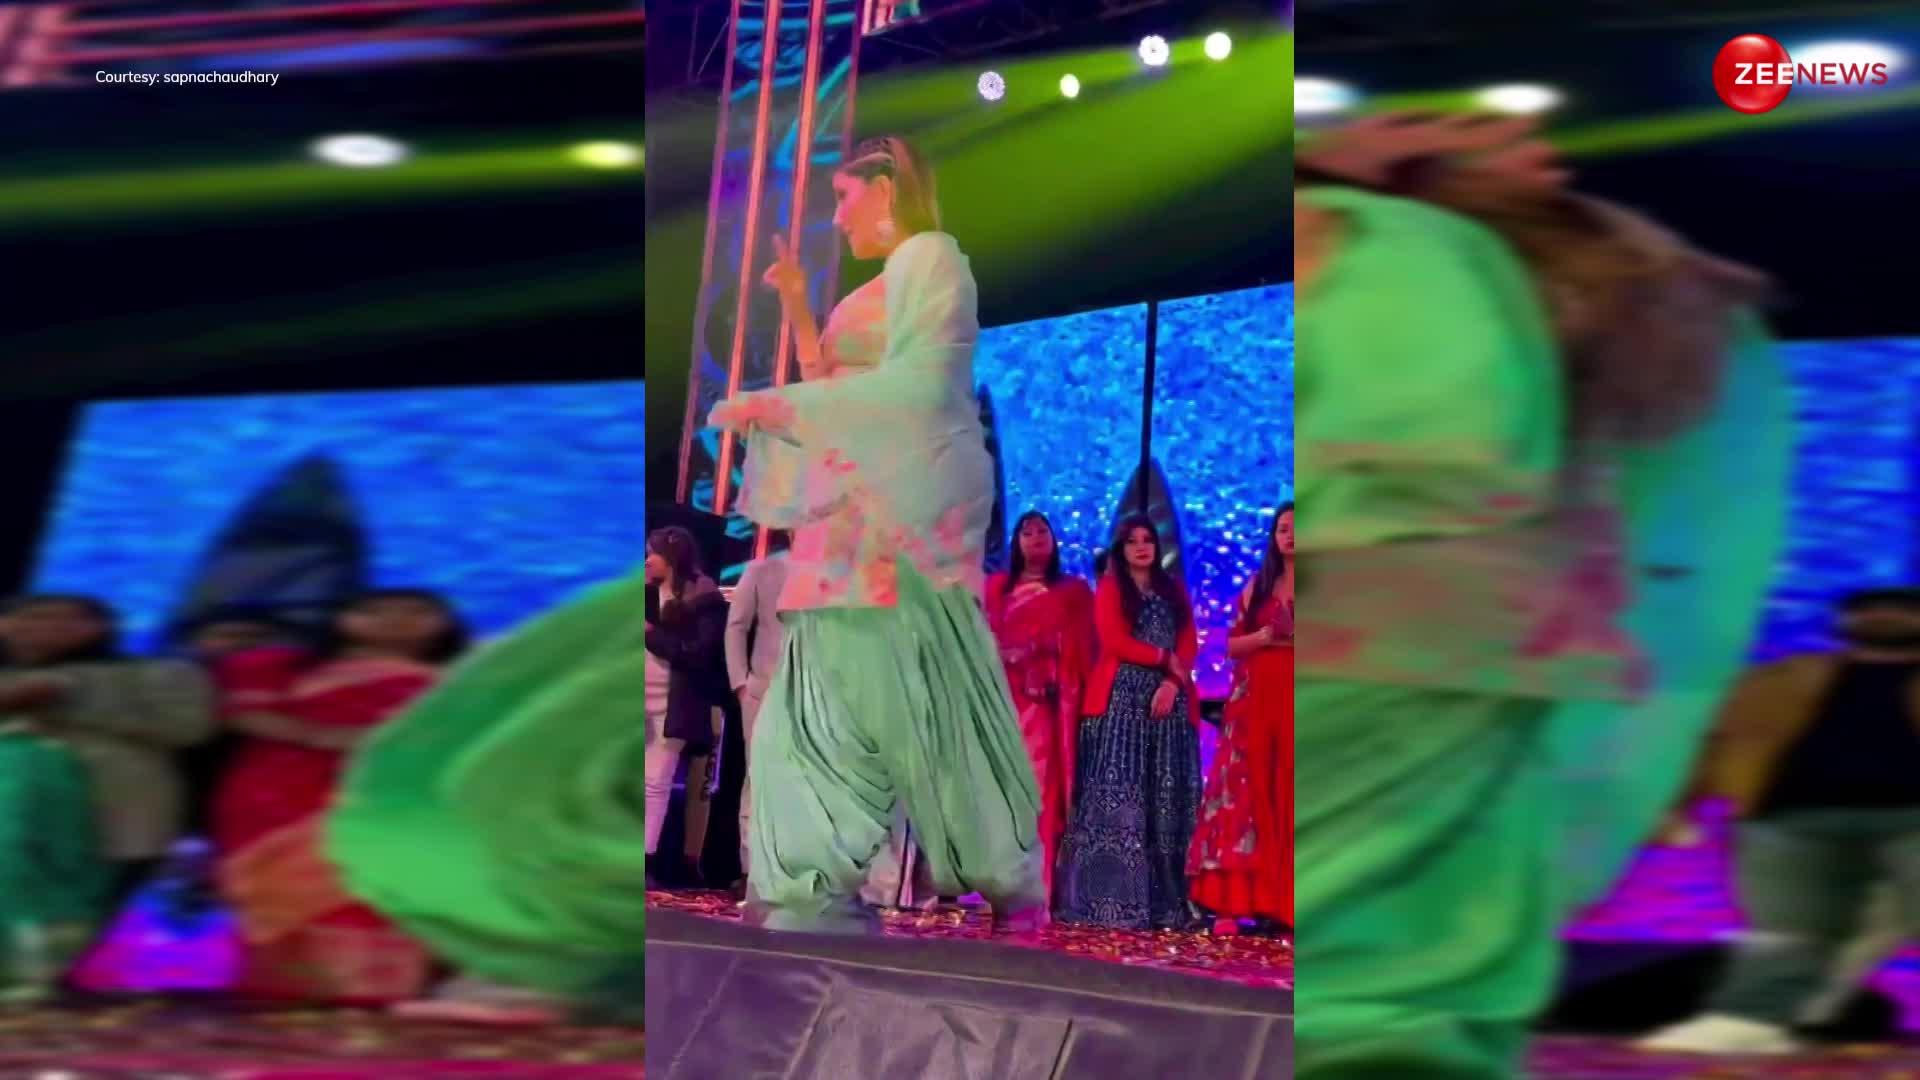 हद है! Sapna Chaudhary ने लड़कों की भीड़ के आगे अपने बदन से फेका दुपट्टा, फिर डांस करते हुए किए गंदे स्टेप्स